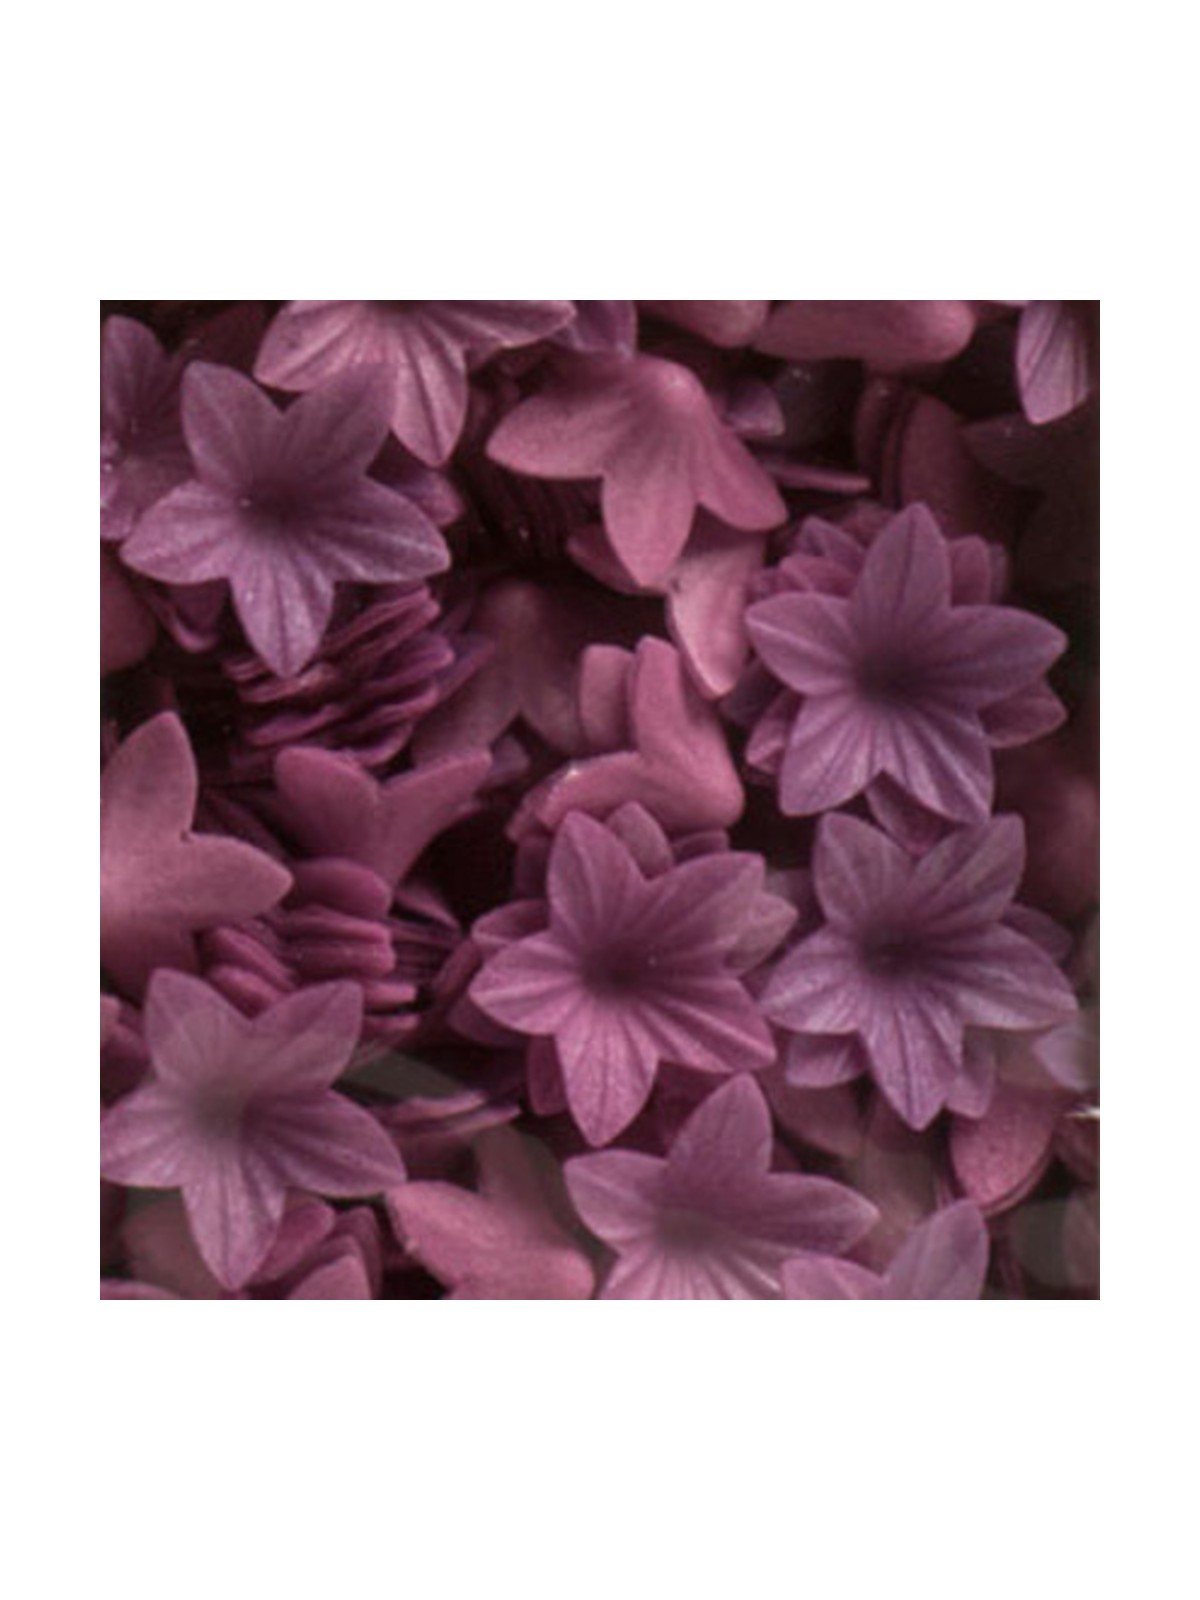 Dekora - Edible paper - purple lily - 400 pcs